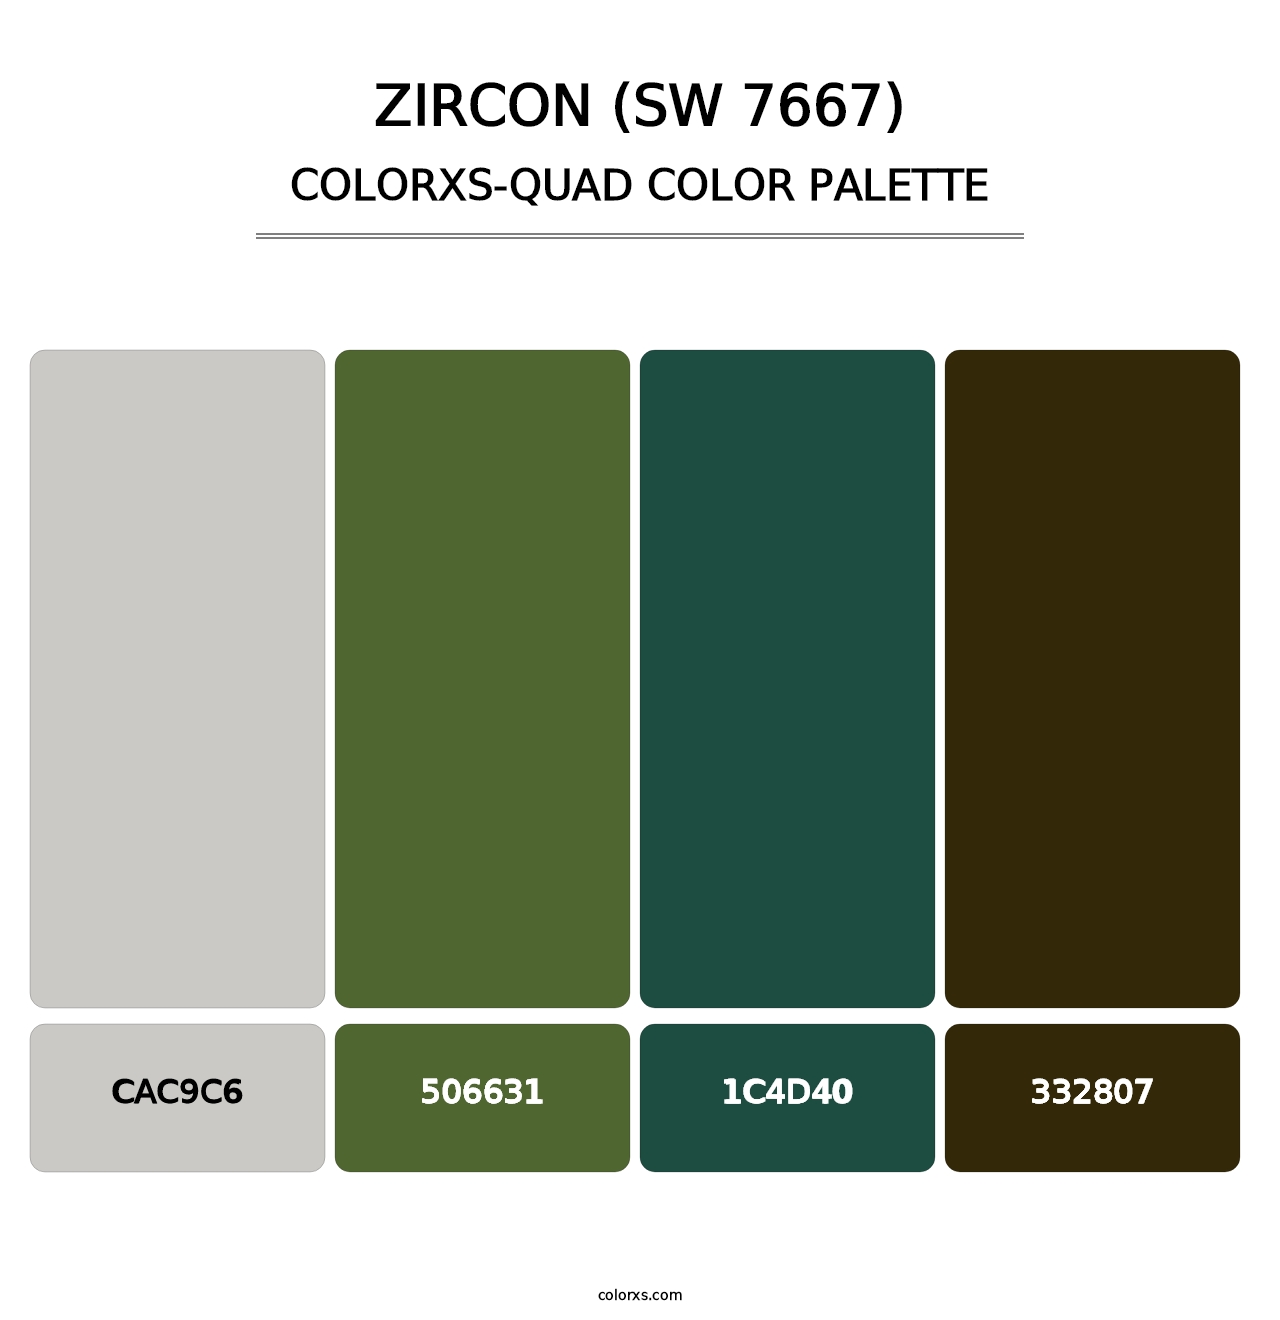 Zircon (SW 7667) - Colorxs Quad Palette